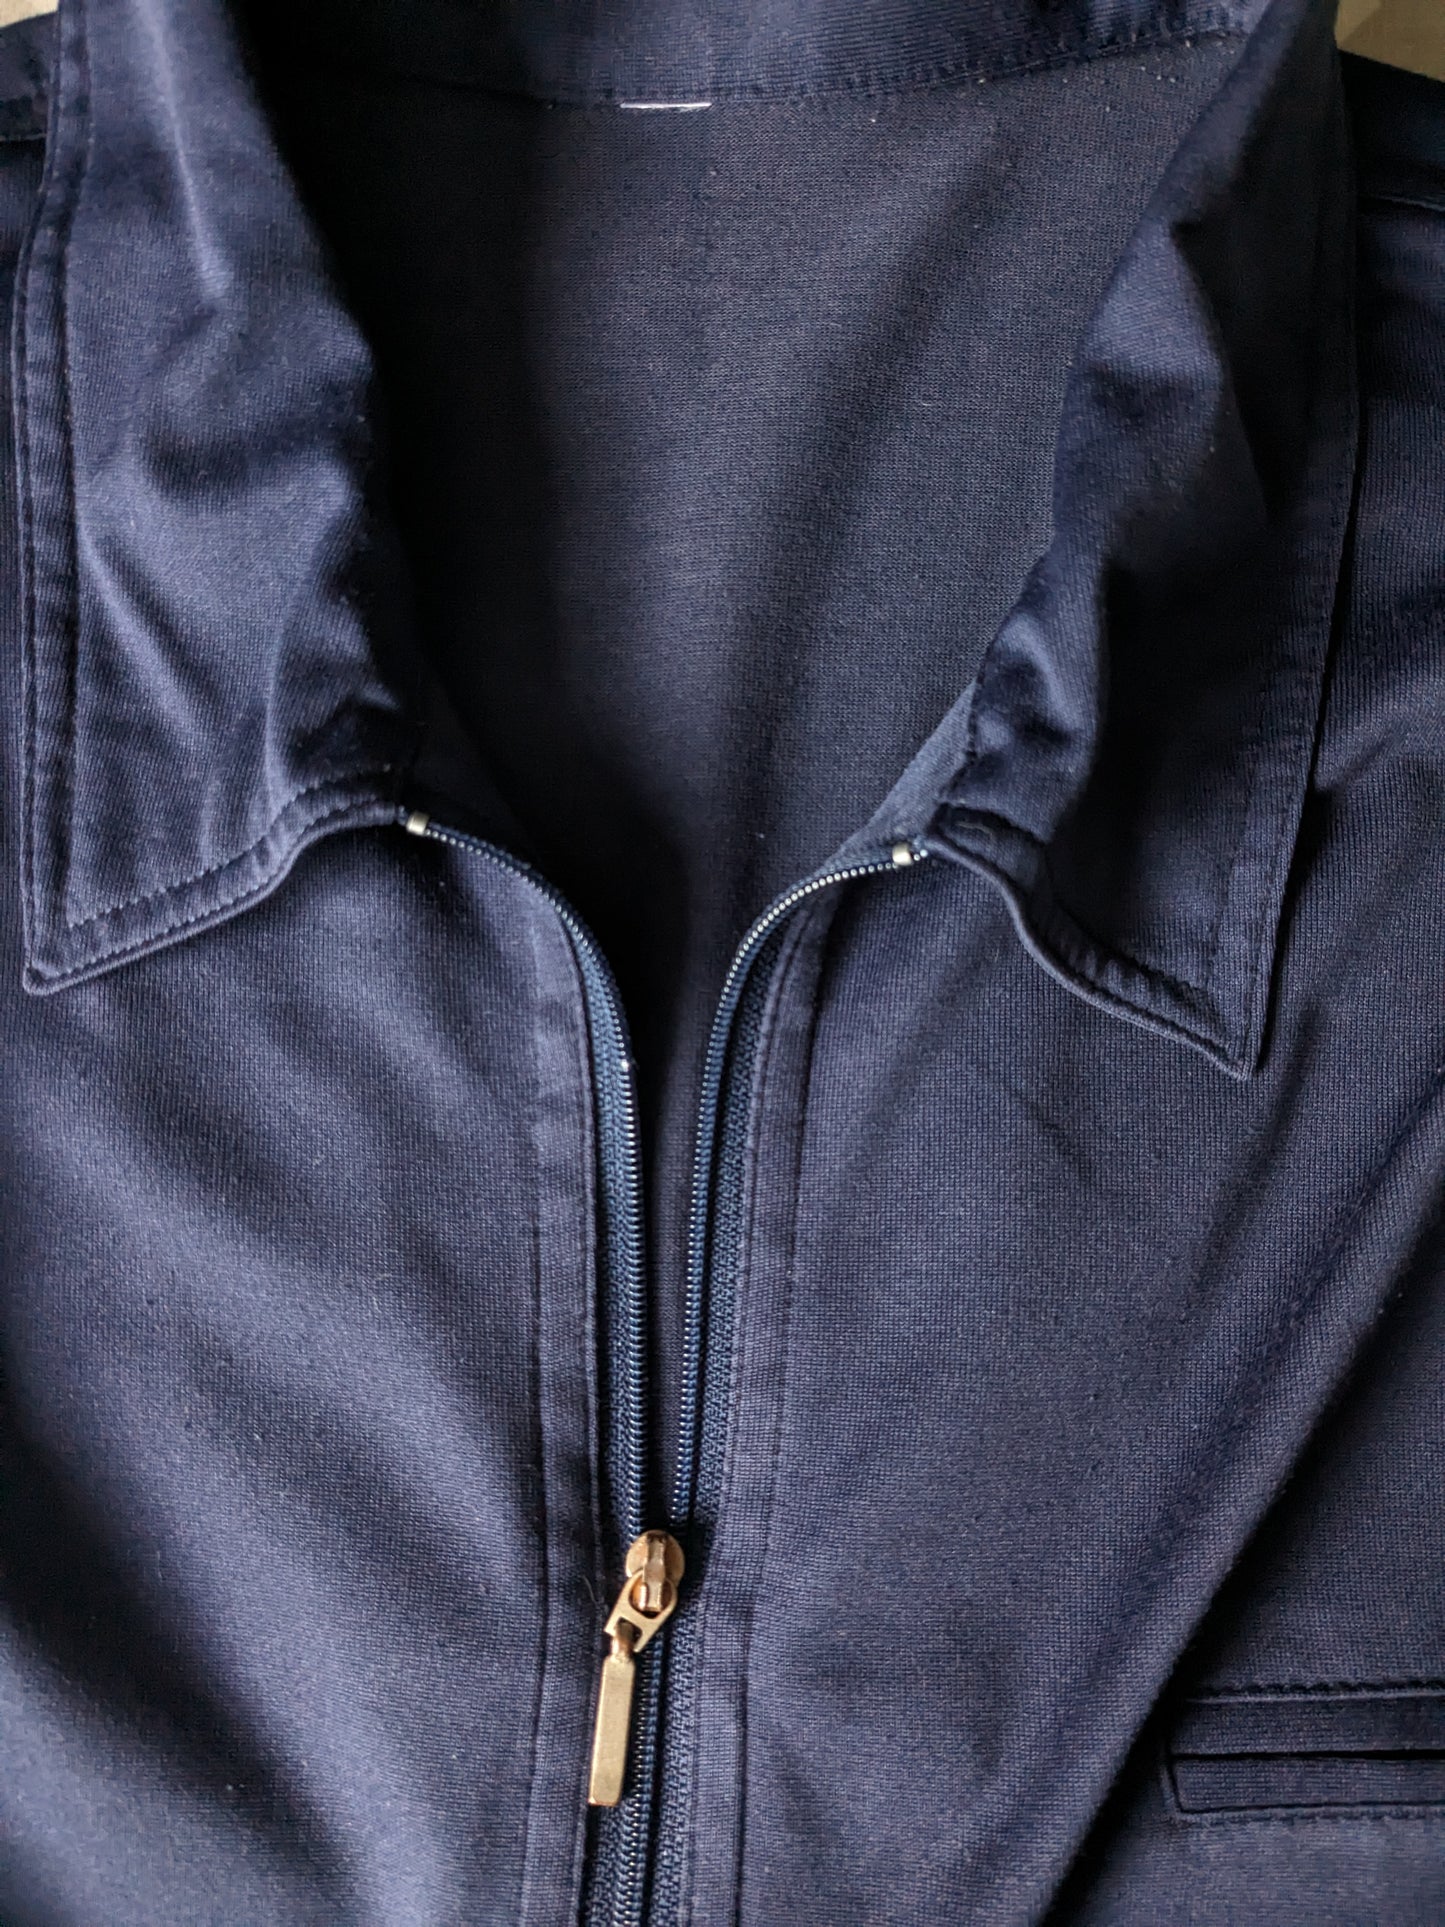 Polo vintage avec bande élastique et fermeture éclair et manches 3 / 4e. Couleur bleu foncé. Taille xl.